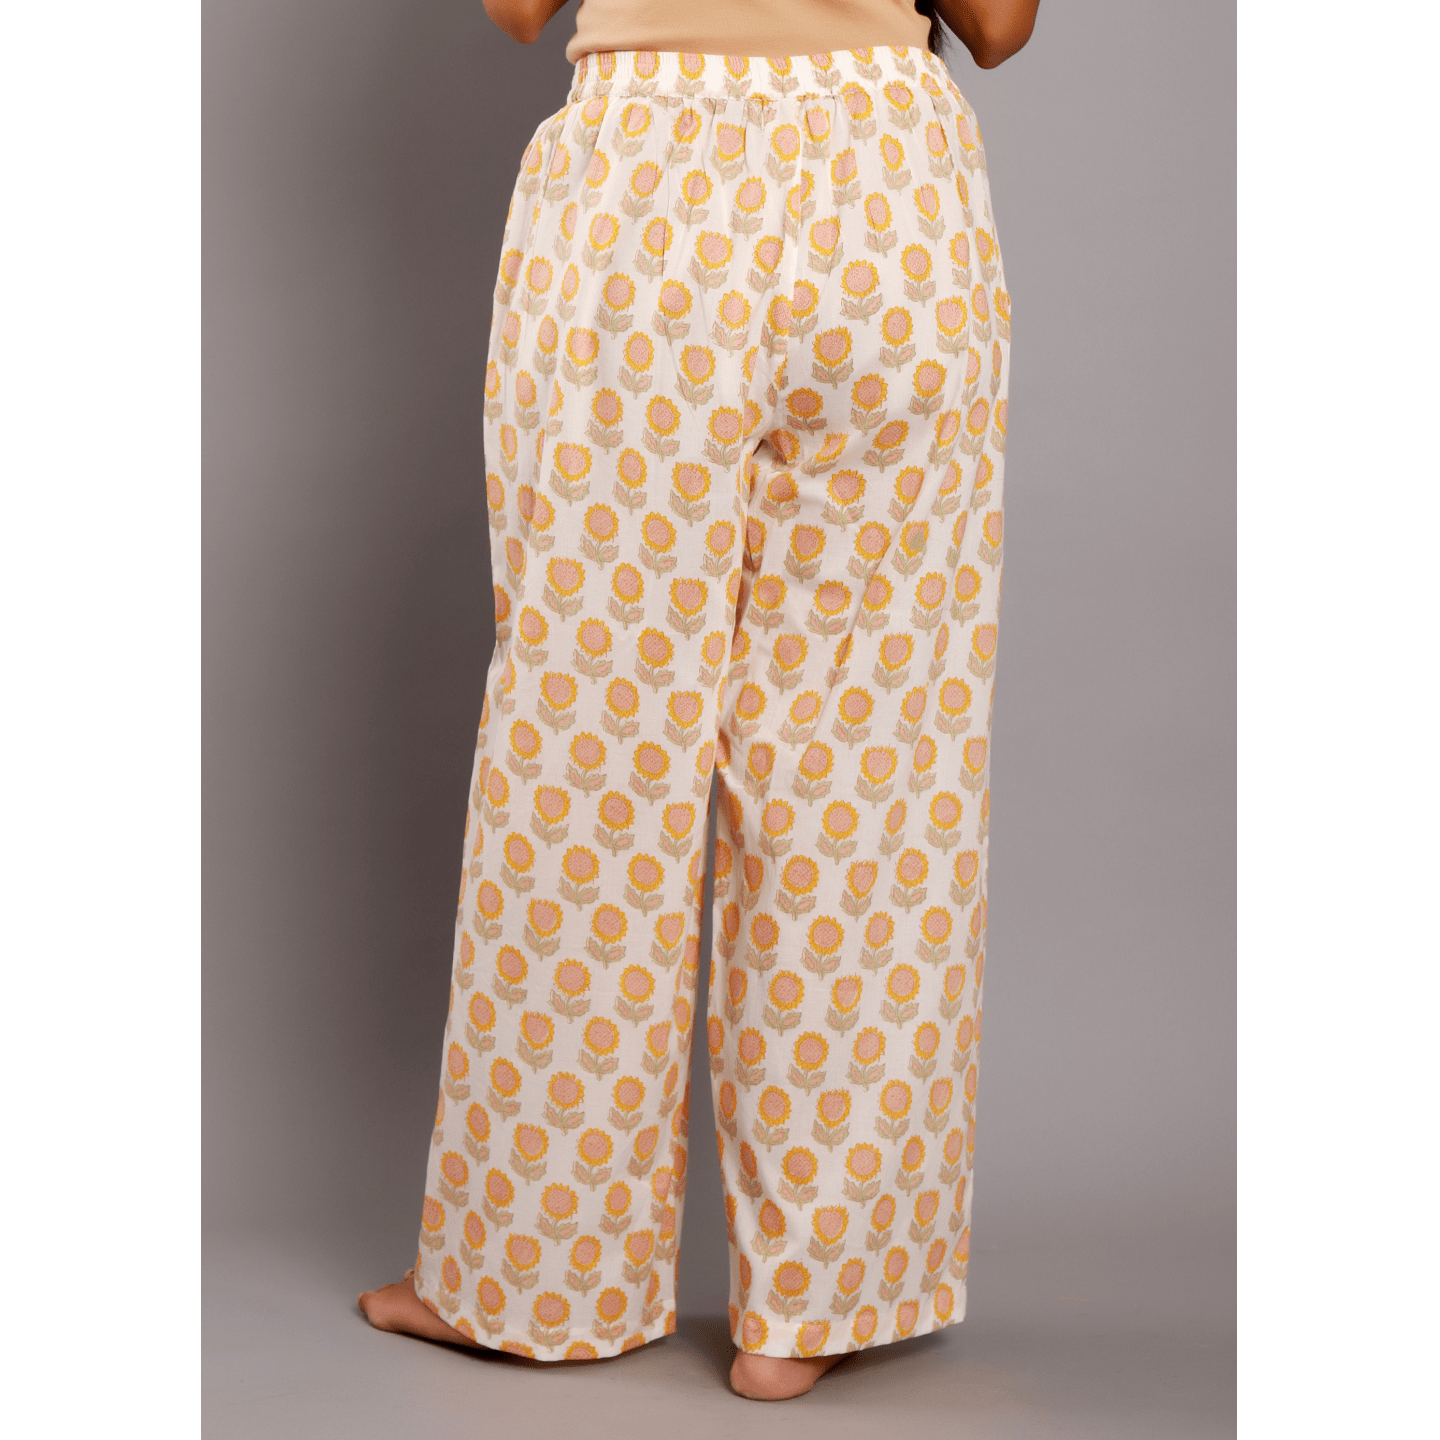 Block printed Women Pyjamas Sunflower Yellow